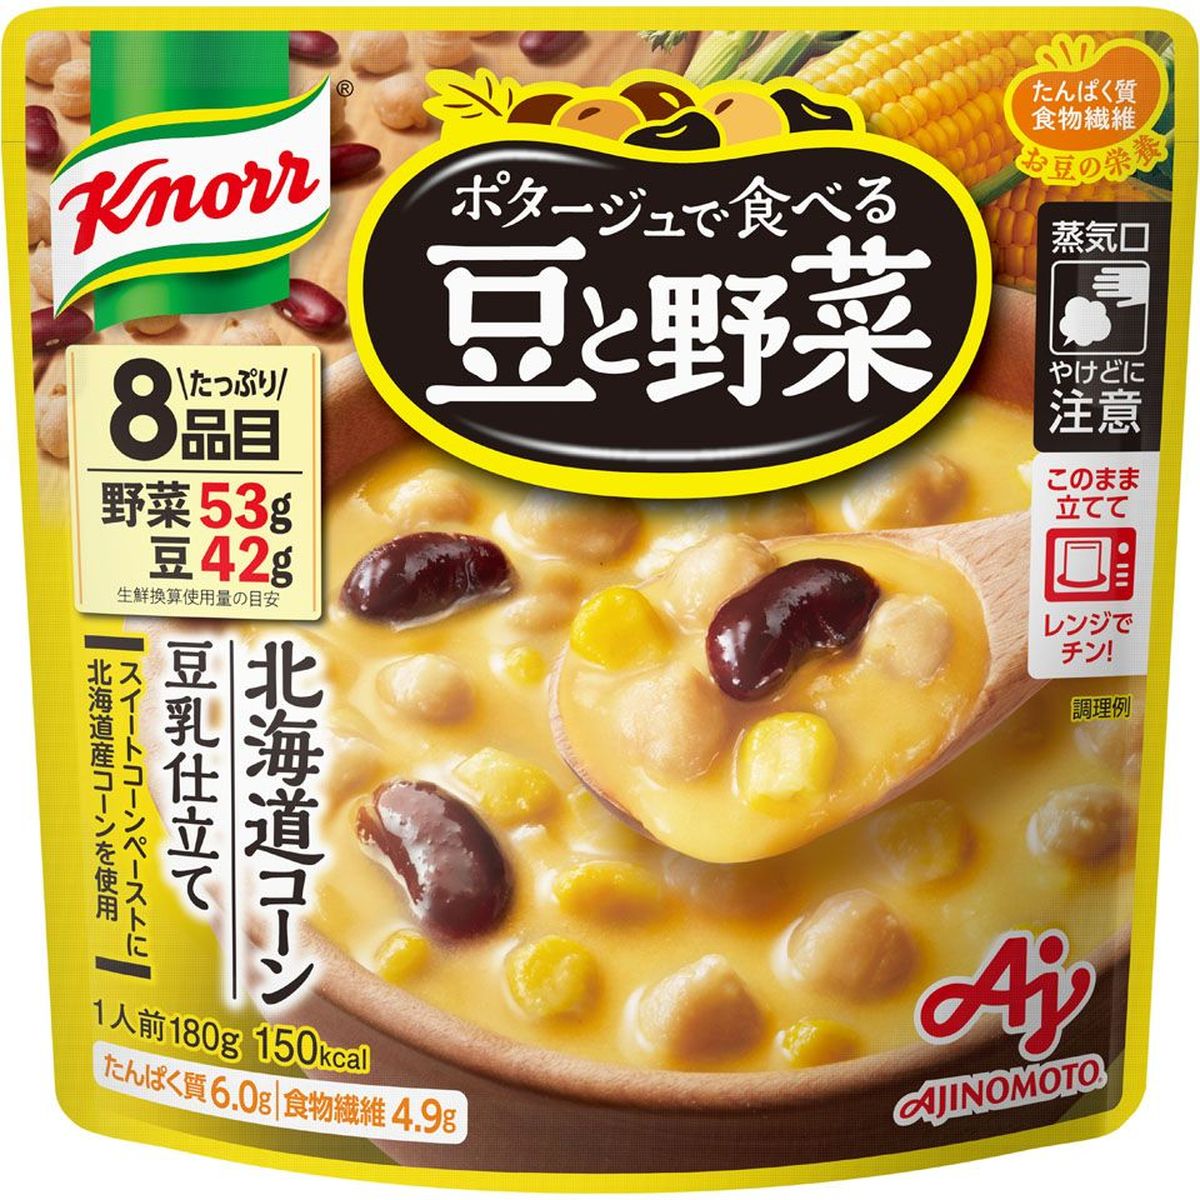 【7個入リ】クノール ポタージュ豆ト野菜北海道コーン 180g